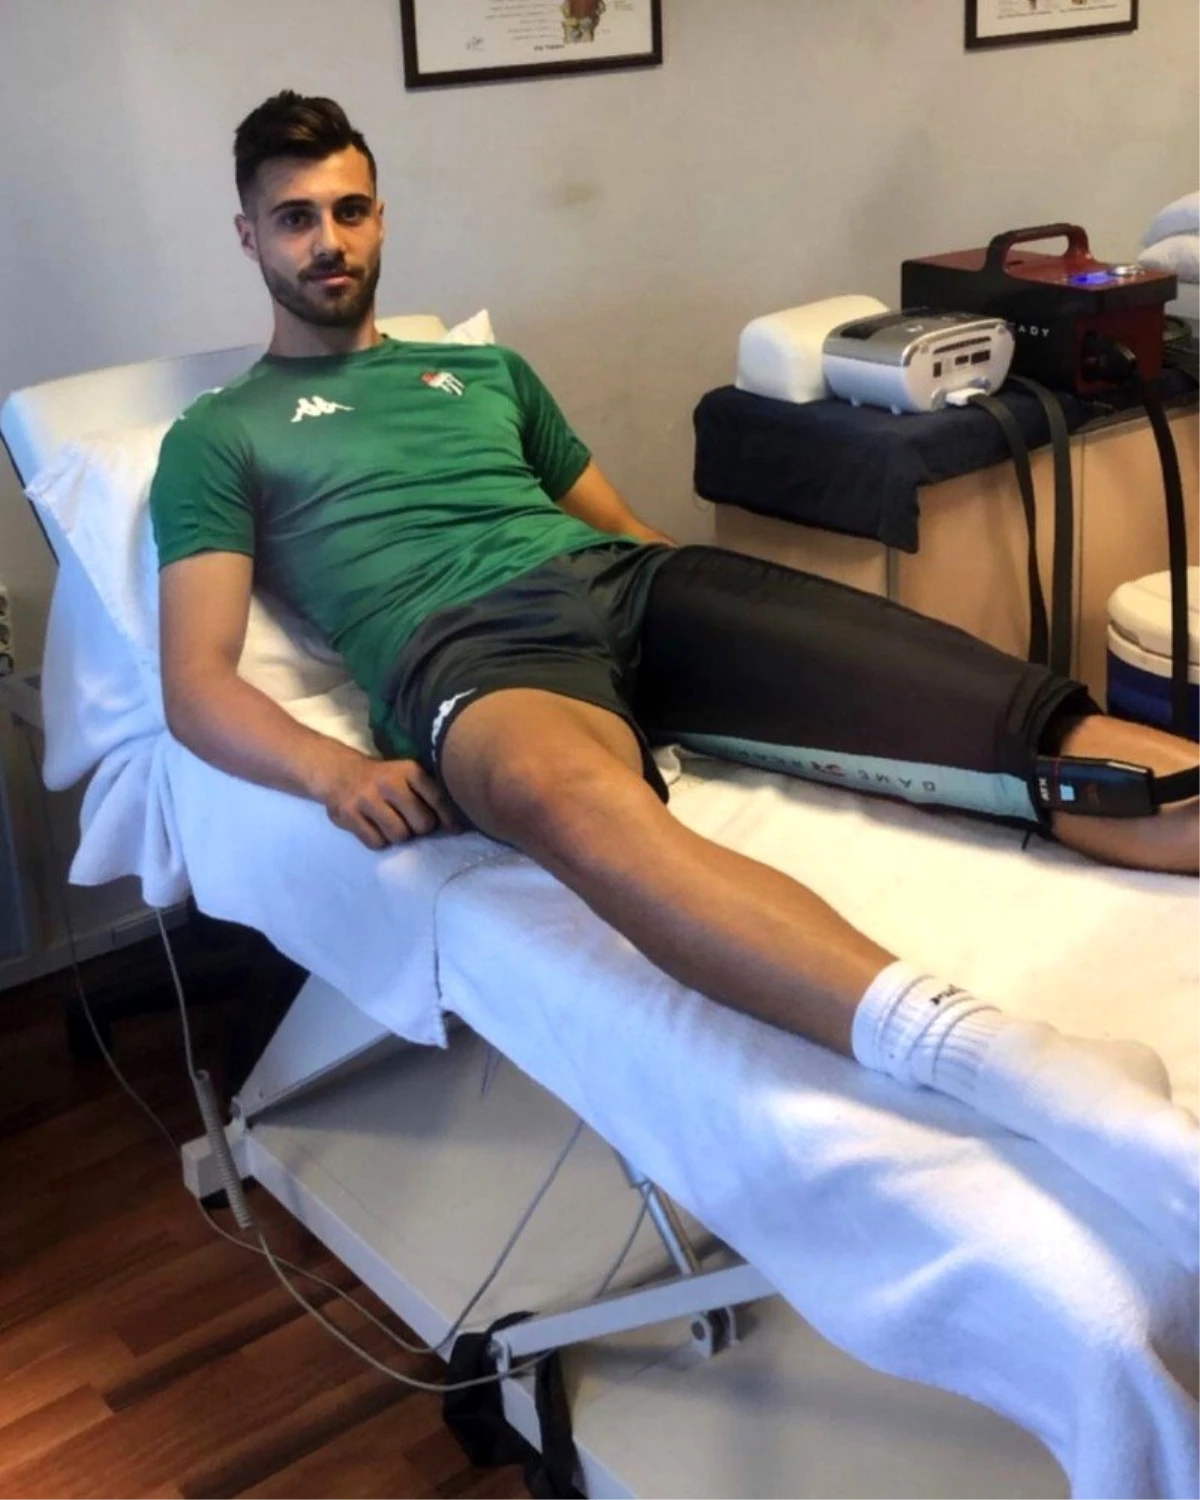 Bursasporlu futbolcu Ataberk Dadakdeniz: "Çok daha güçlü döneceğim"